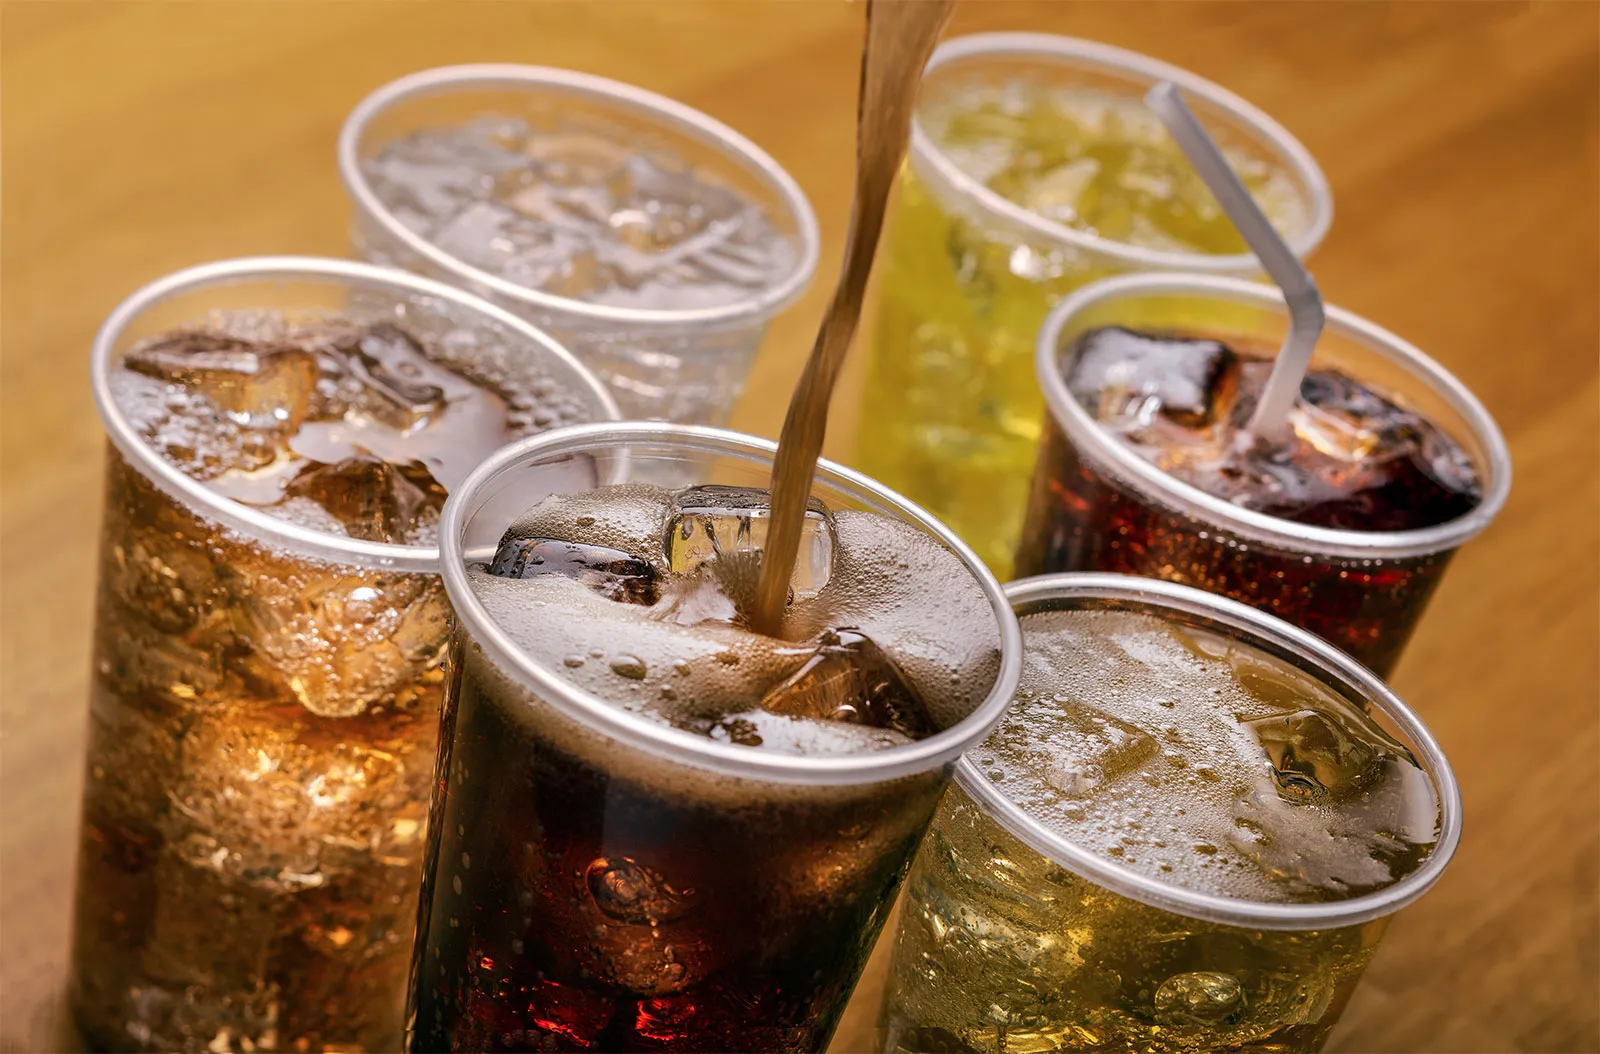 İftan sofralarında şekerli ve asitli içecekleri geniş yer veriliyor. Uzmanlar ise vücuda zarar veren bu içeceklerin tüketilmemesi gerektiğini ifade ediyor.